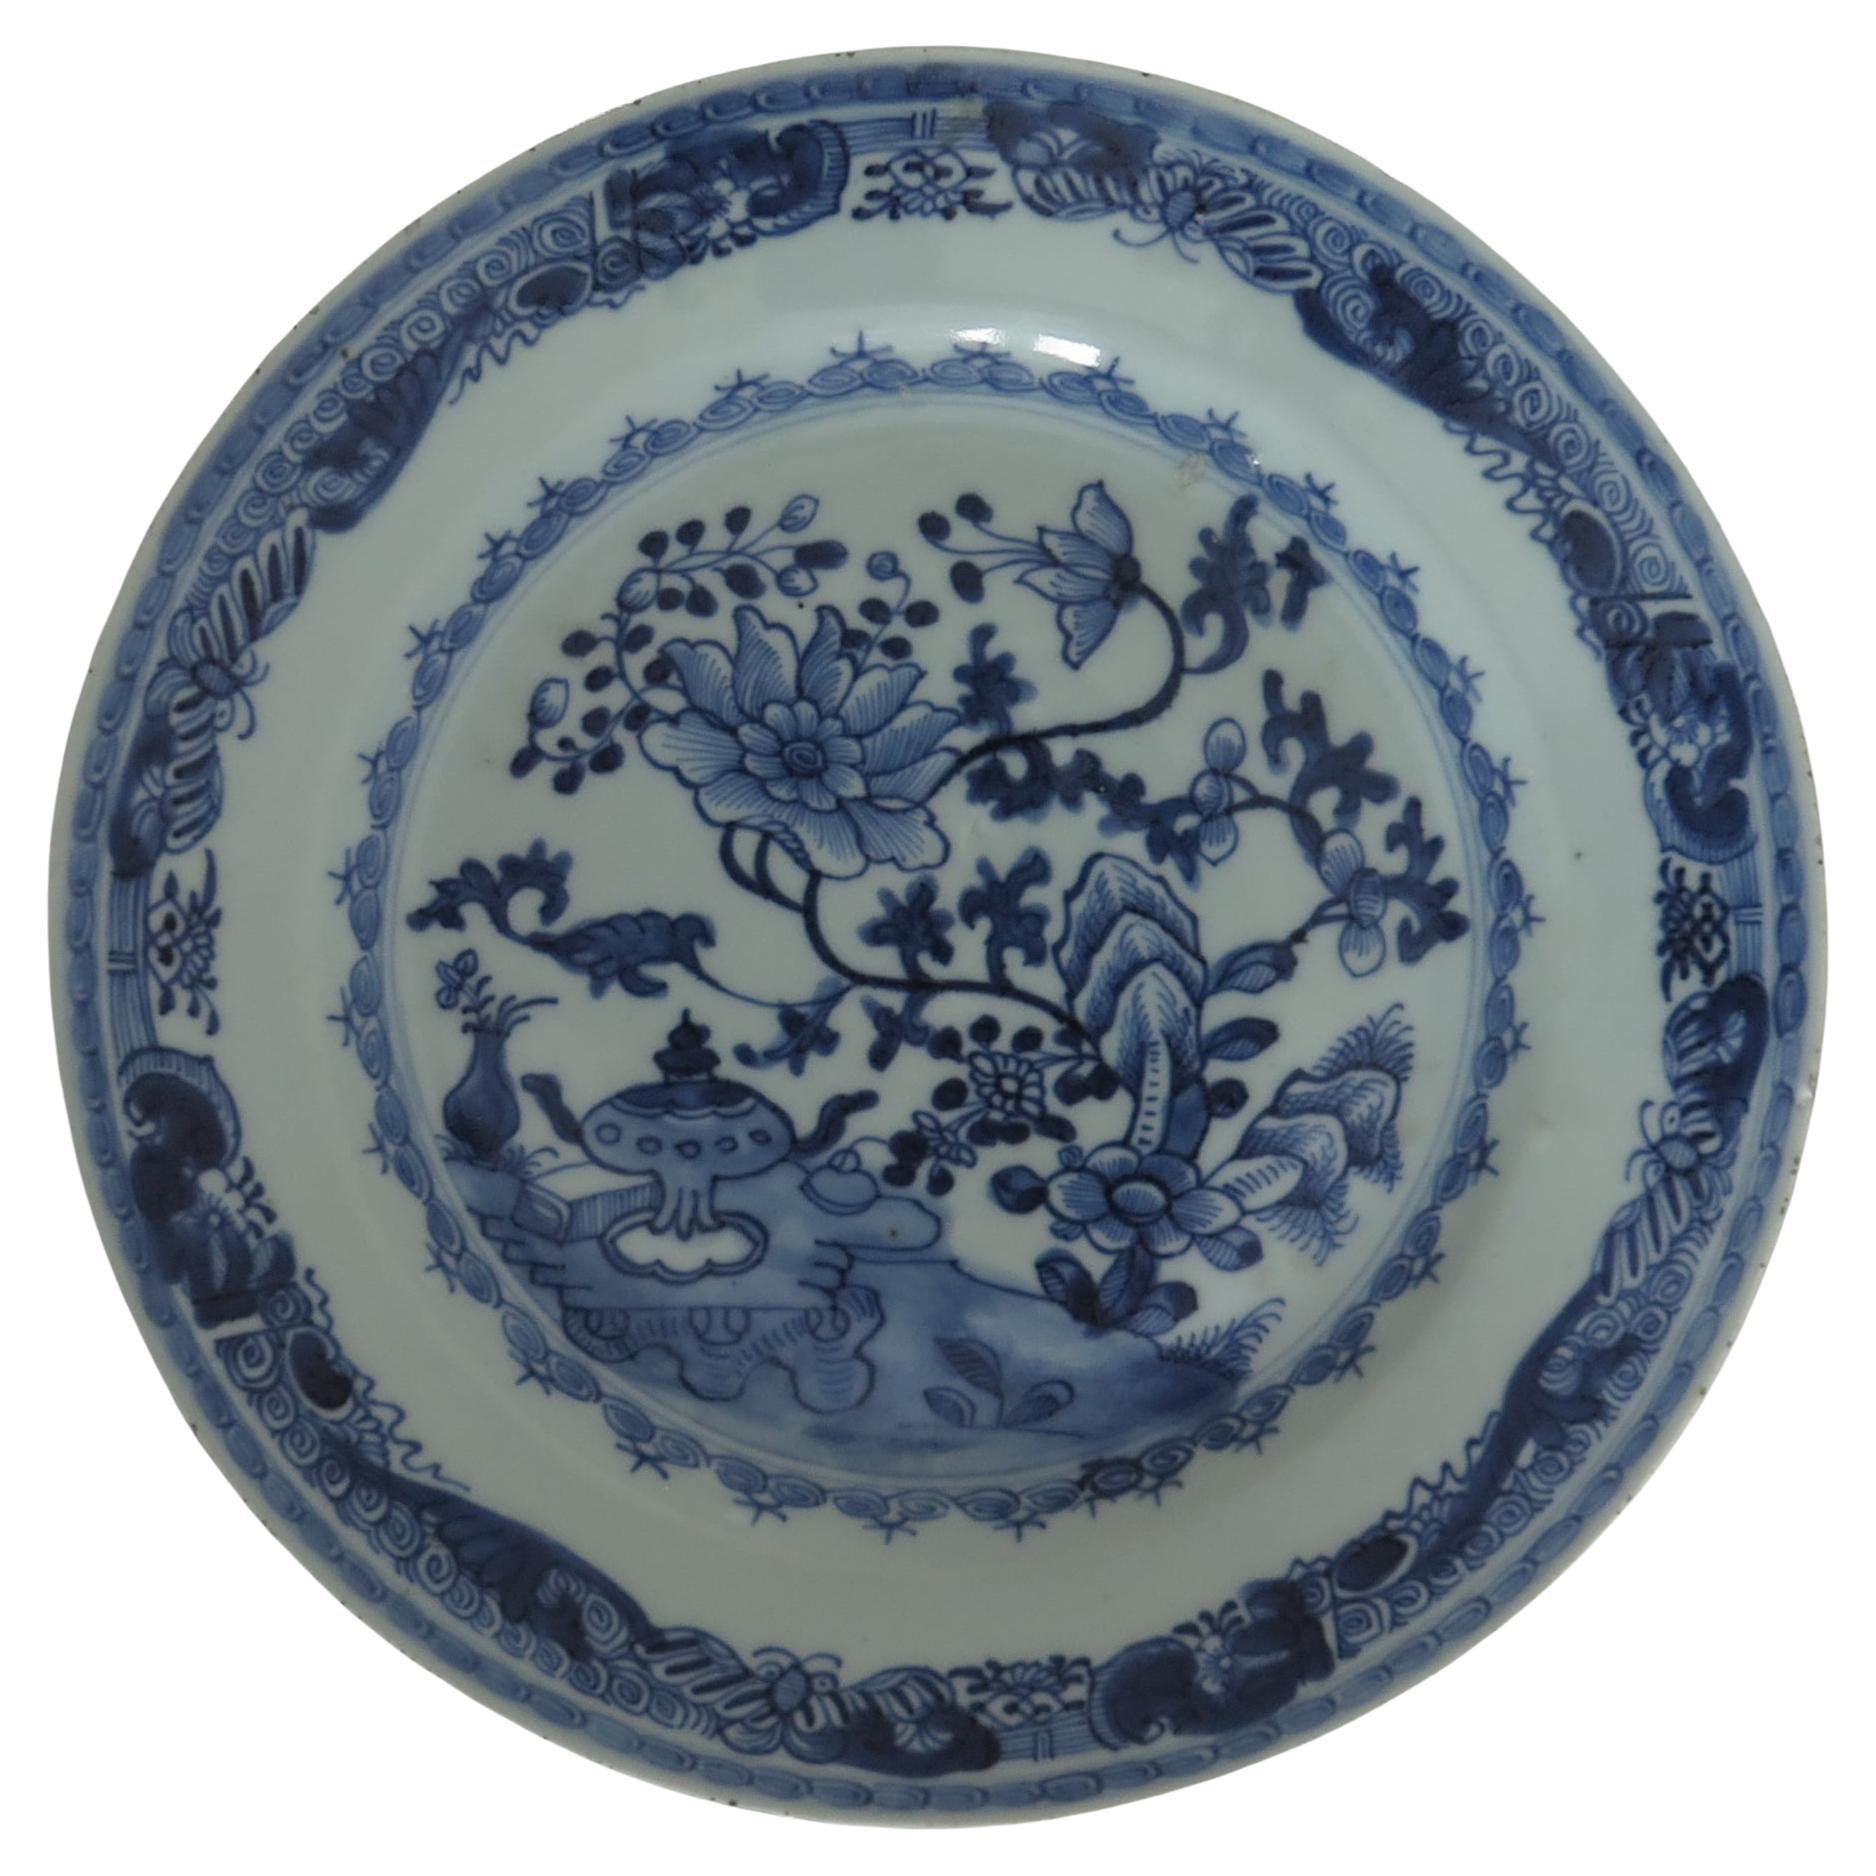 Grande assiette chinoise bleue et blanche du 18ème siècle, Qing Qianlong, datant d'environ 1750